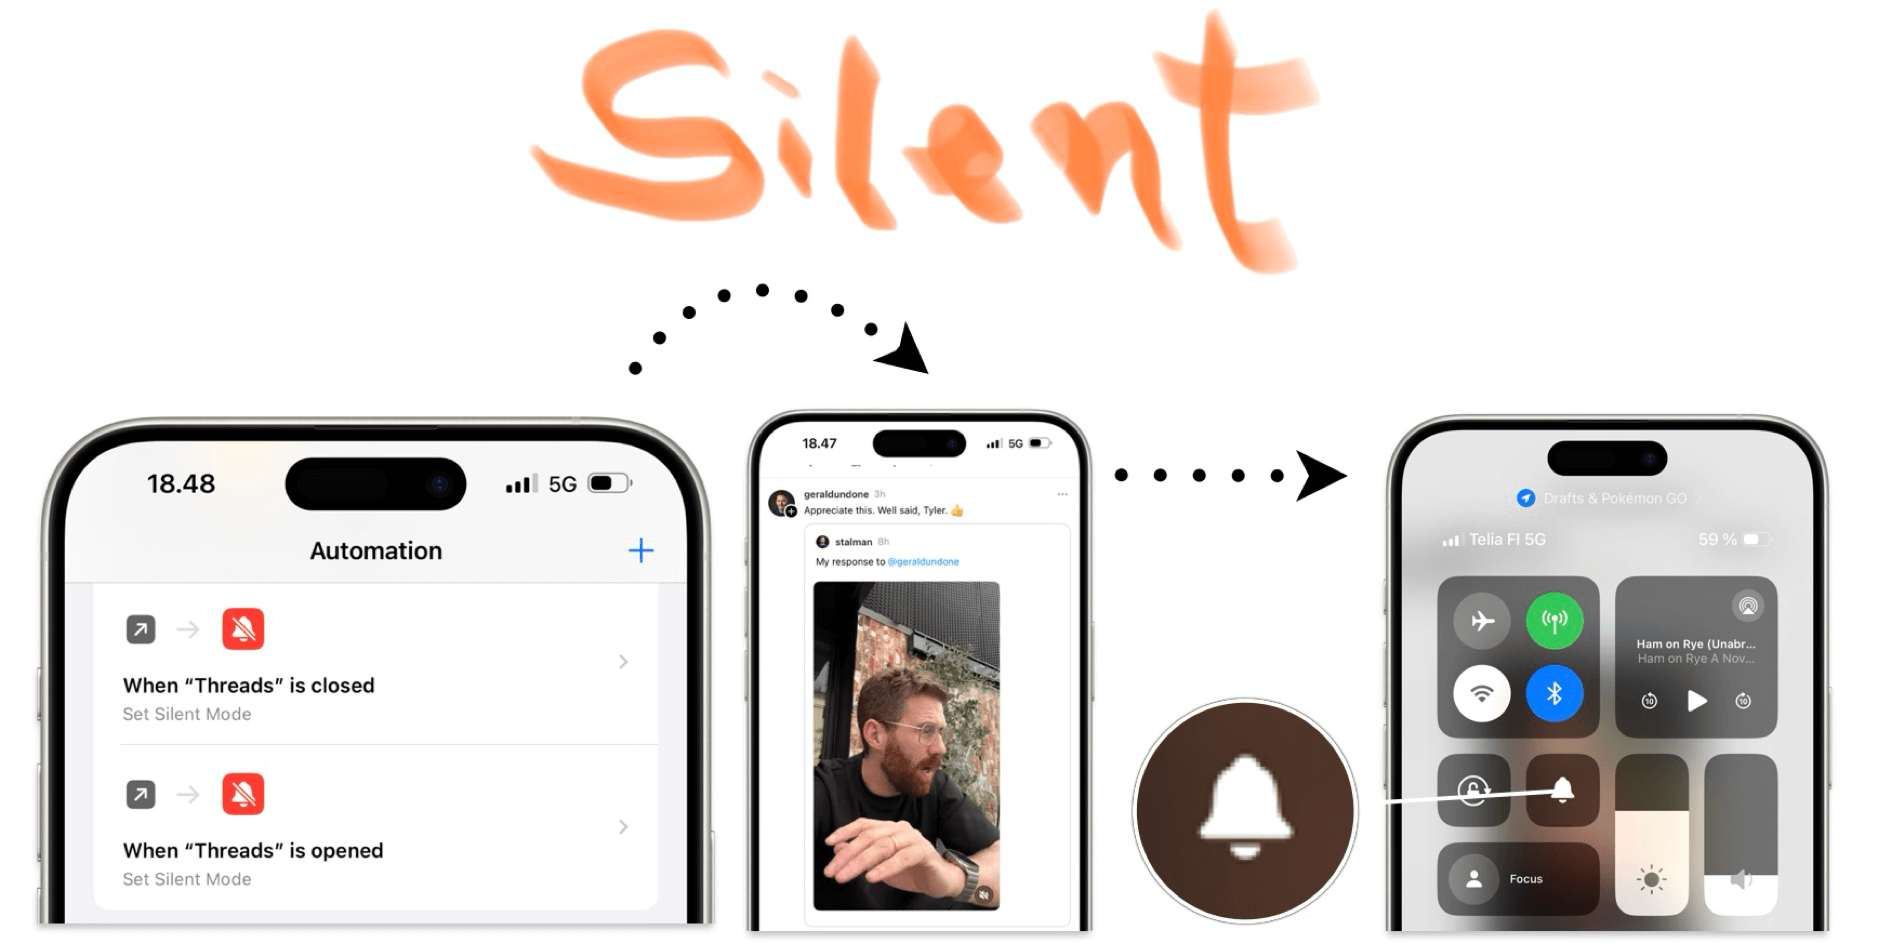 Dieses Bild zeigt eine Collage verschiedener Smartphone-Bildschirme und Benutzeroberflächen-Elemente. Der Fokus liegt auf dem Wort "Silent", das in einem orangefarbenen, stilisierten Schriftbild dargestellt ist, umgeben von Anwendungsbildschirmen und Steuerungselementen.